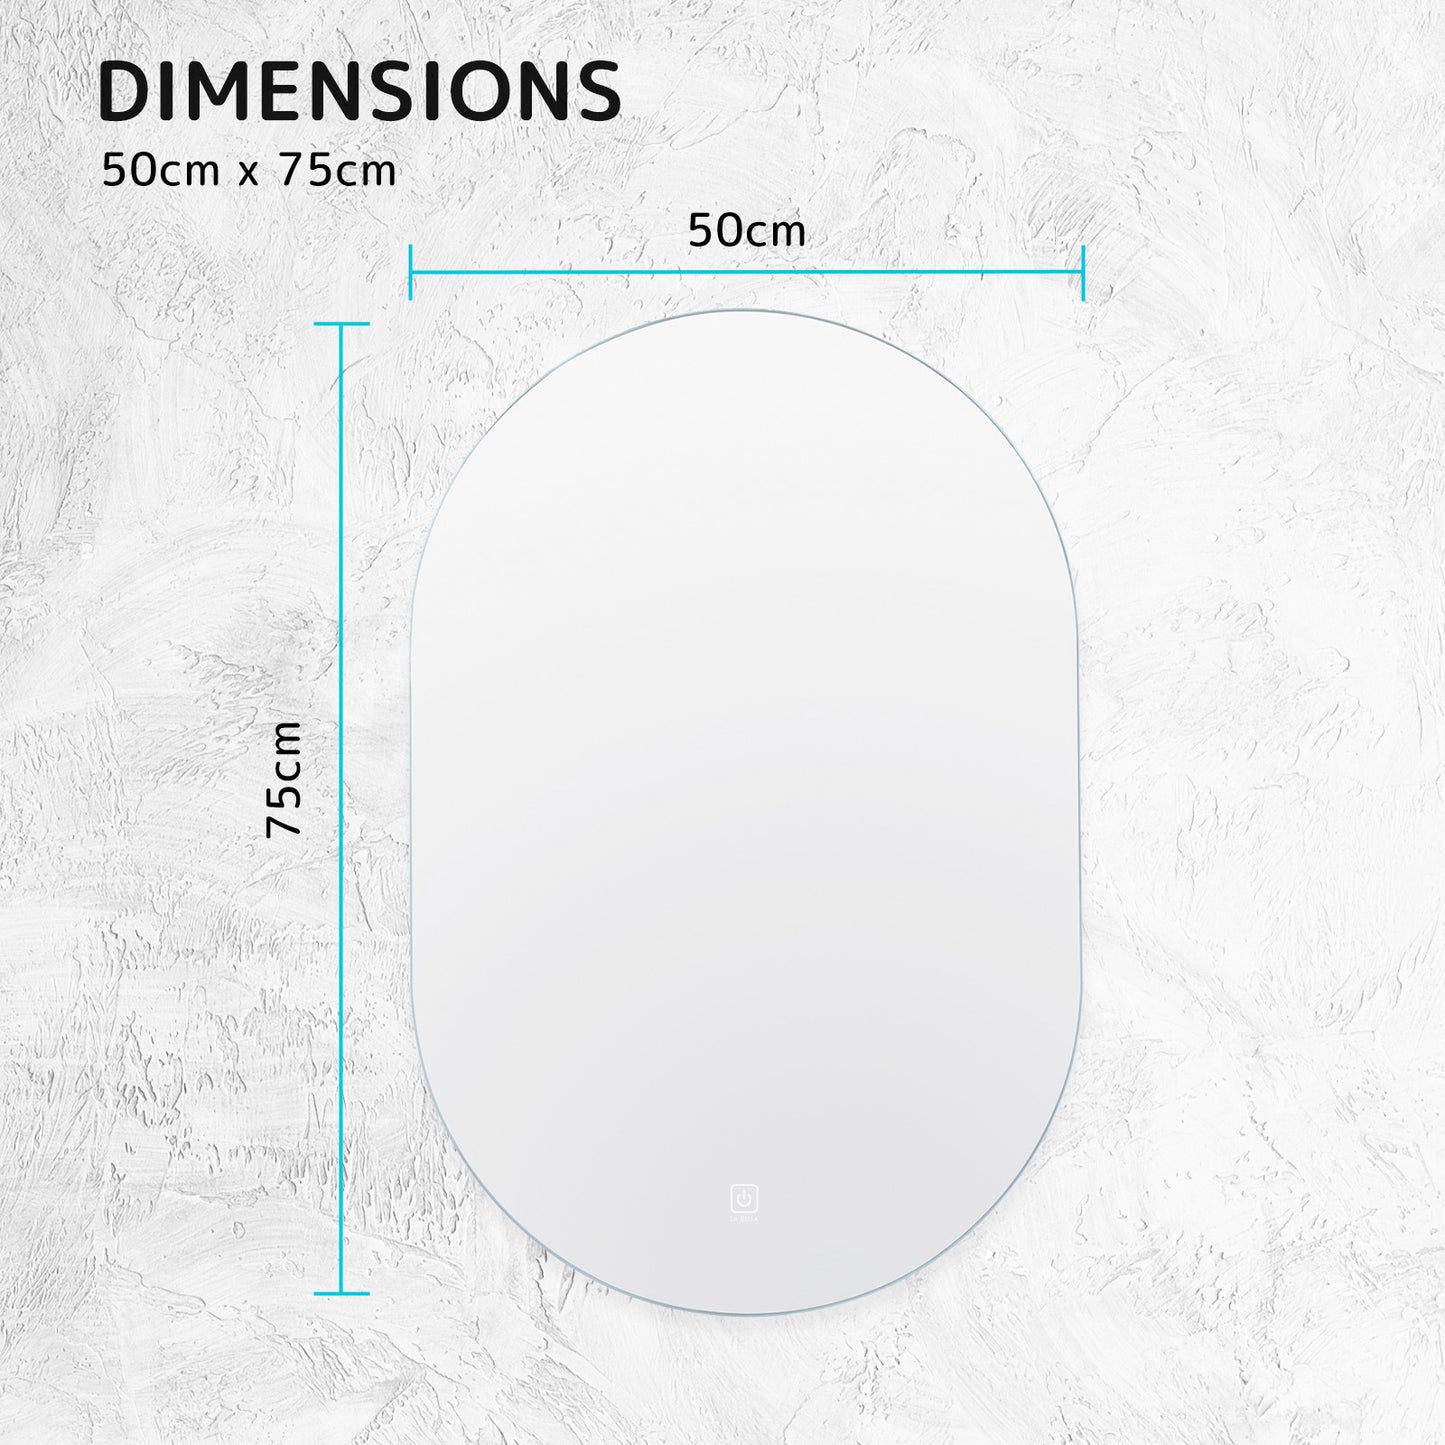 LED Wall Mirror Oval Anti-Fog Bathroom 50x75cm BLACK